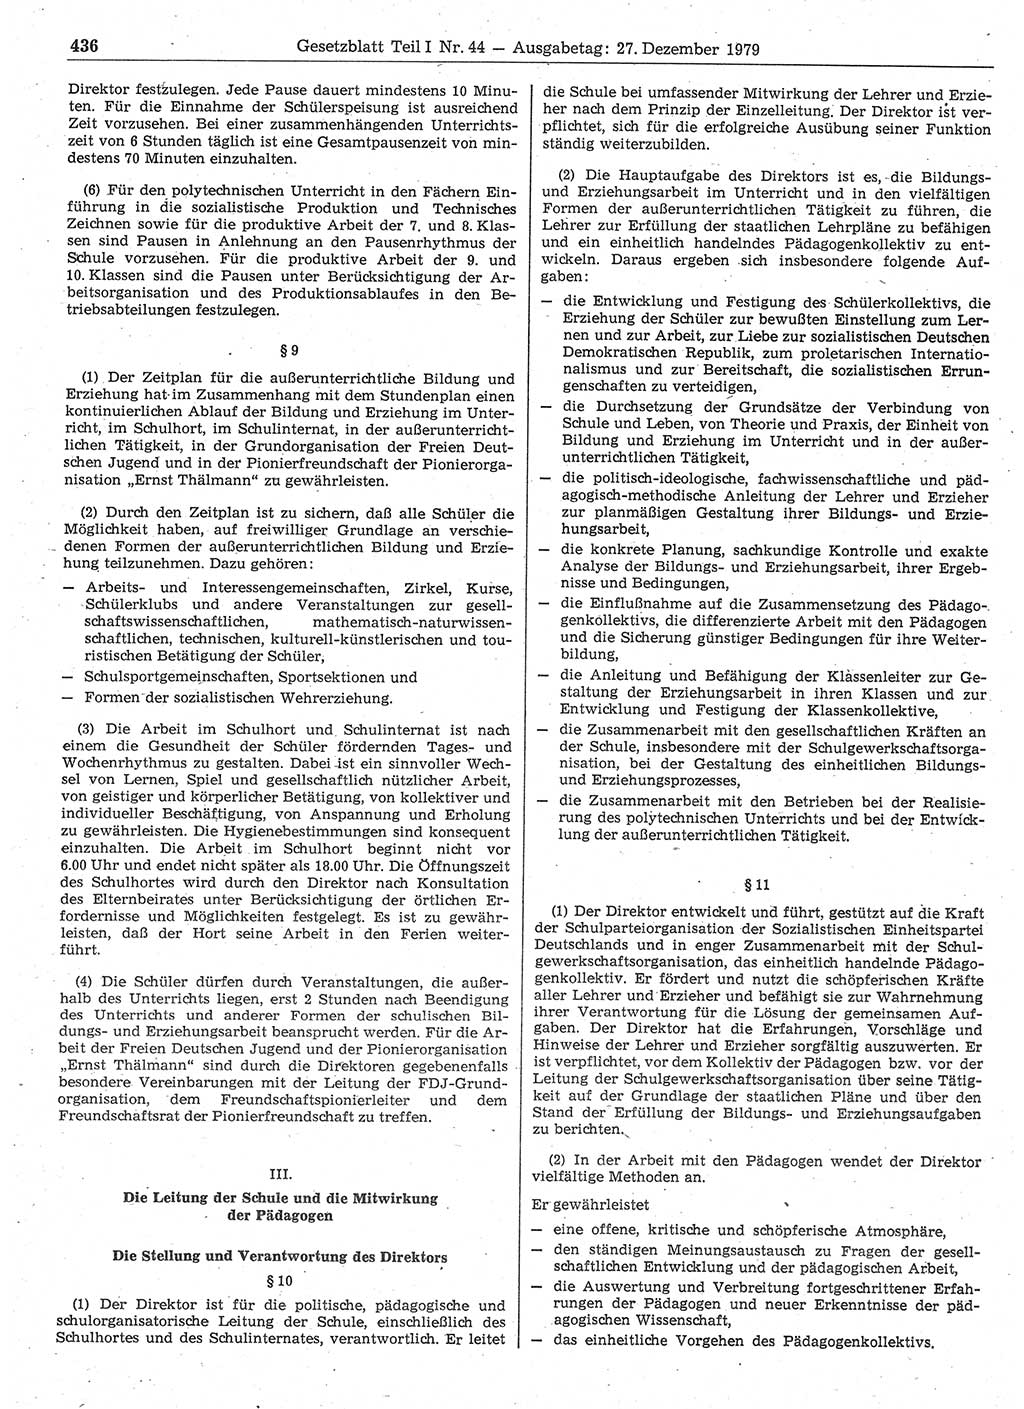 Gesetzblatt (GBl.) der Deutschen Demokratischen Republik (DDR) Teil Ⅰ 1979, Seite 436 (GBl. DDR Ⅰ 1979, S. 436)